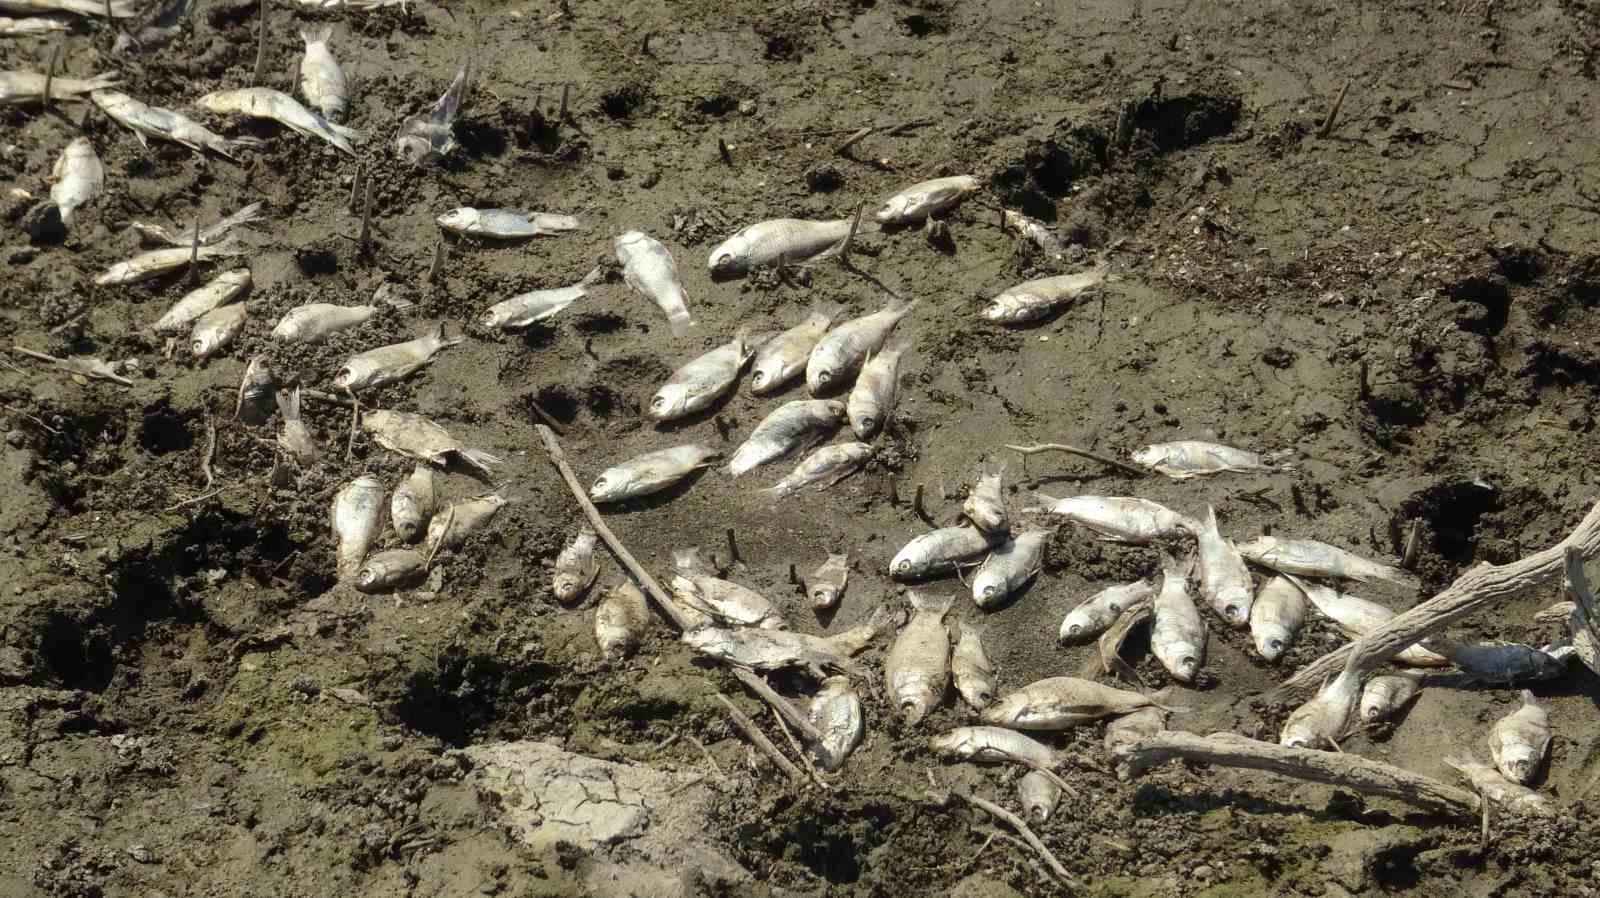 Bursa Kocasu Deresinde Balık Ölümleri